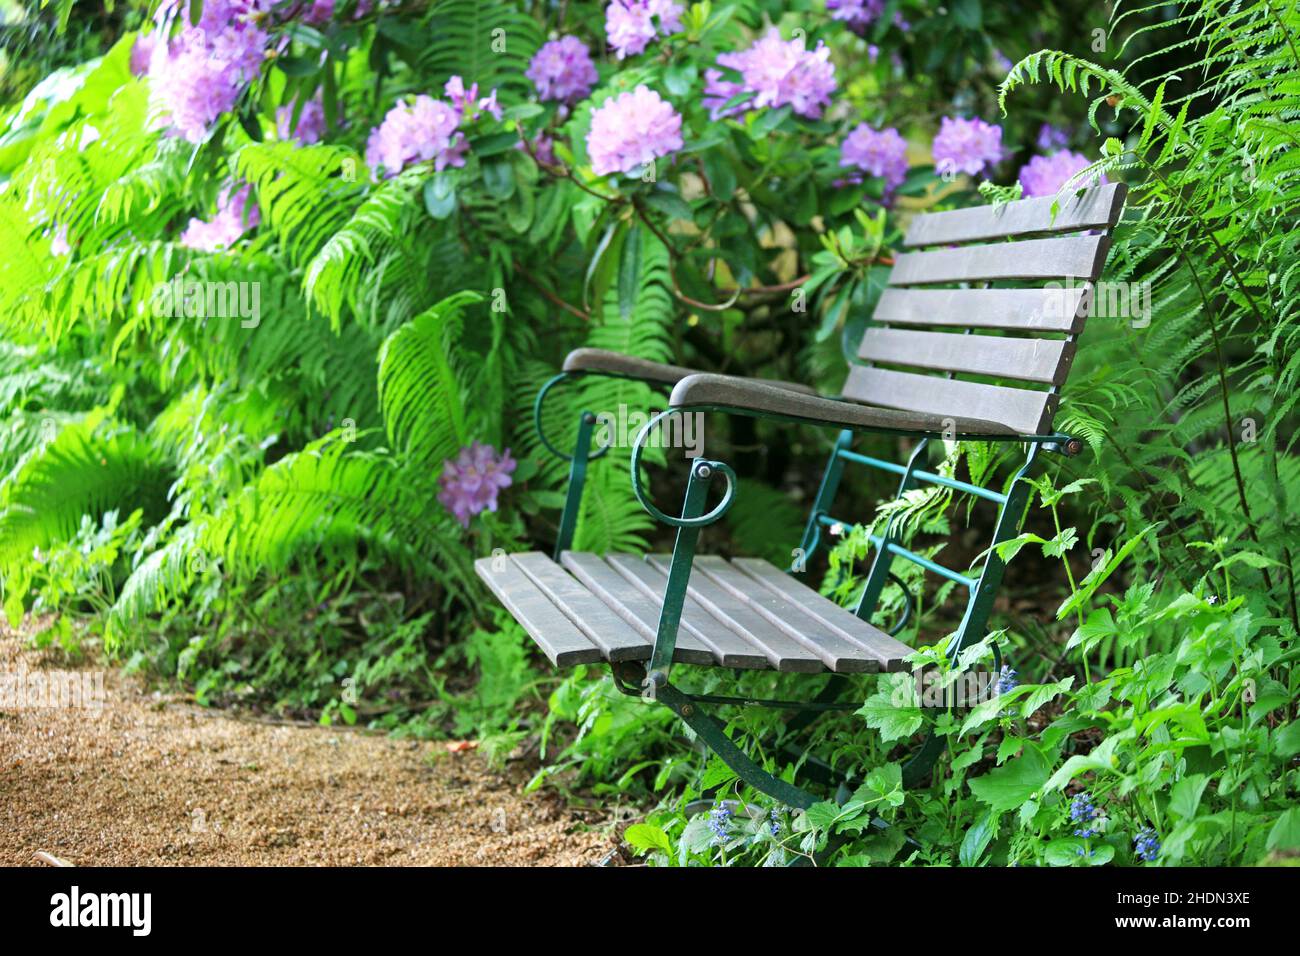 idyllically, garden chair, idyllicallies, garden chairs Stock Photo